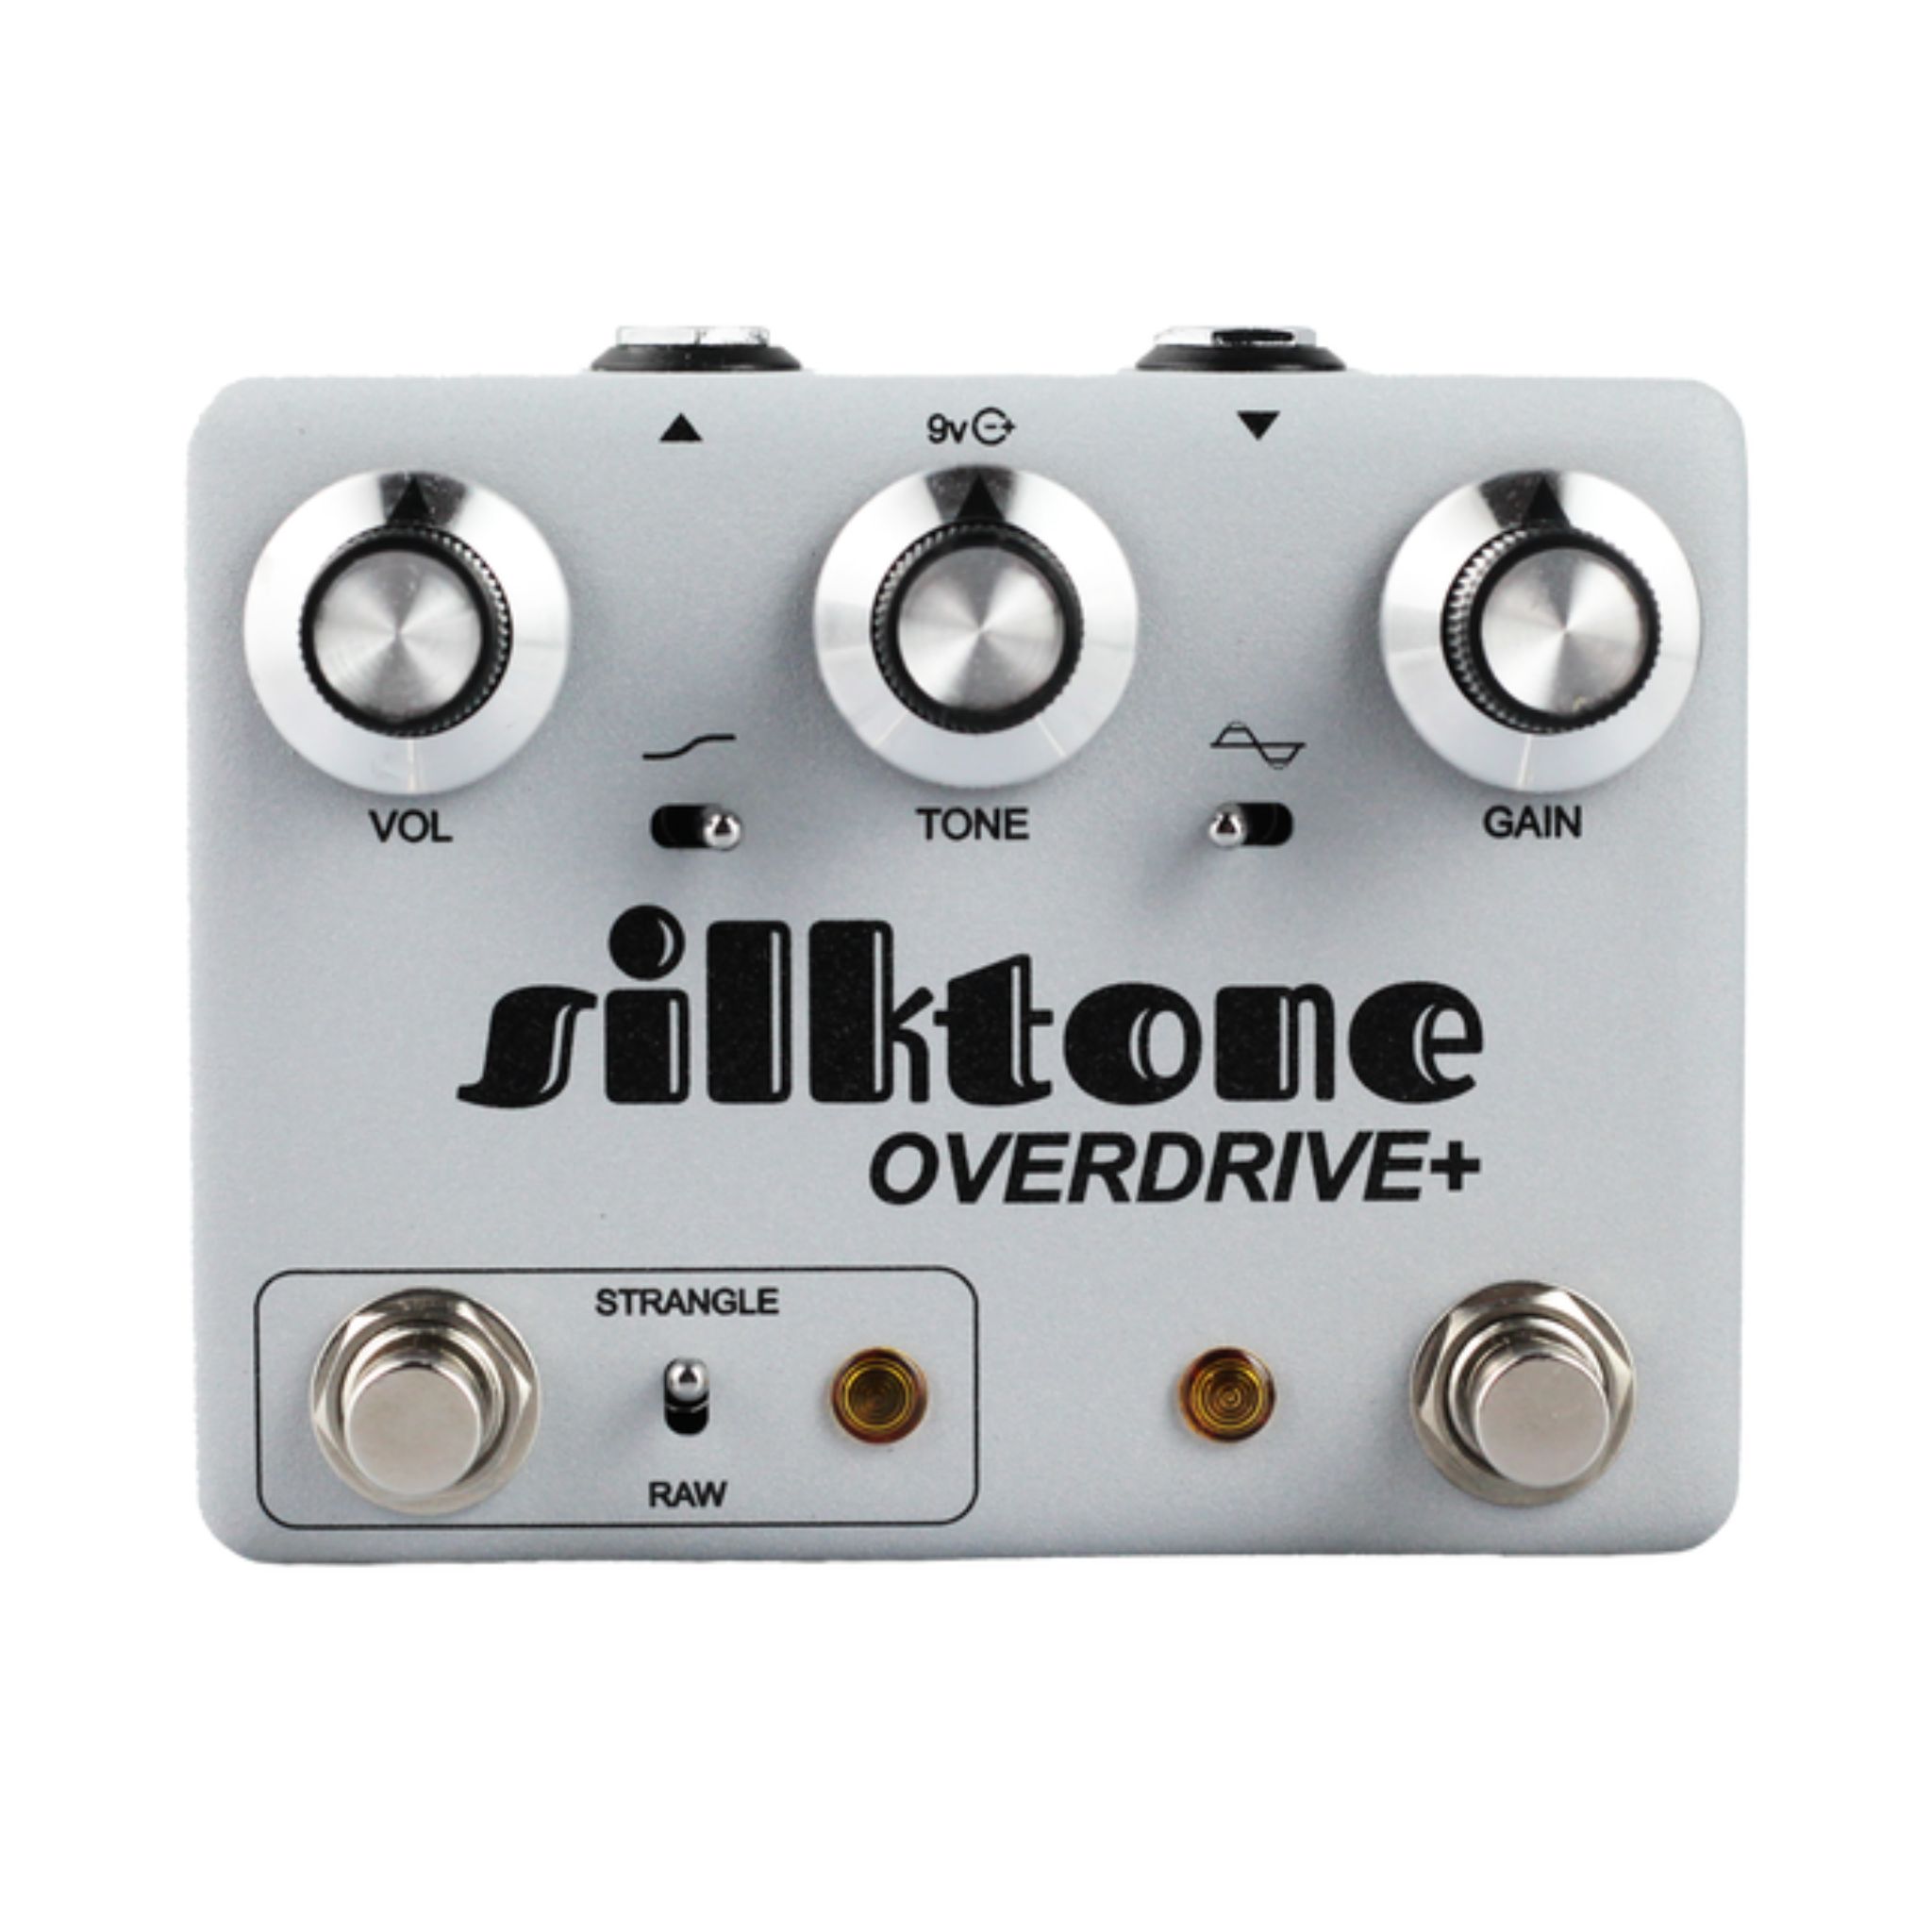 Silktone Overdrive+ Pedal